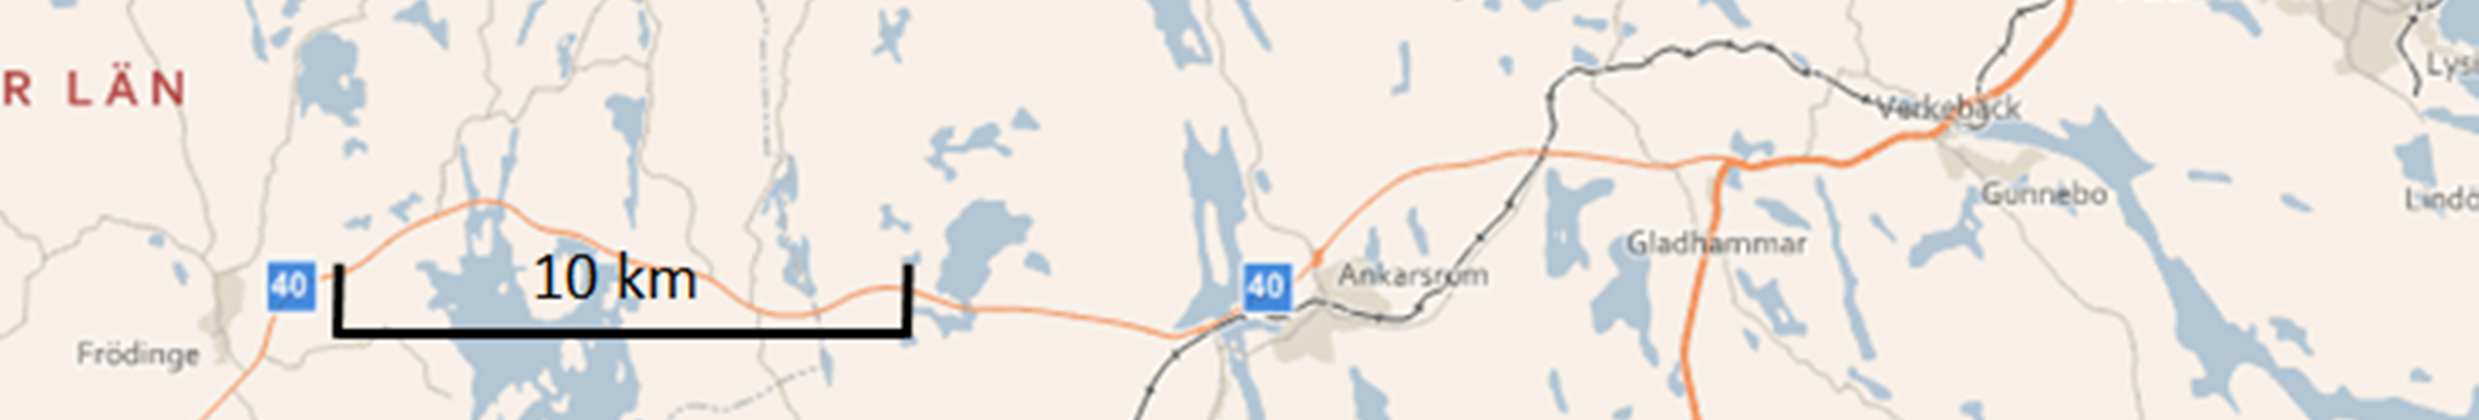 Västerviks Kommun, Kalmar Län Orienetingskarta